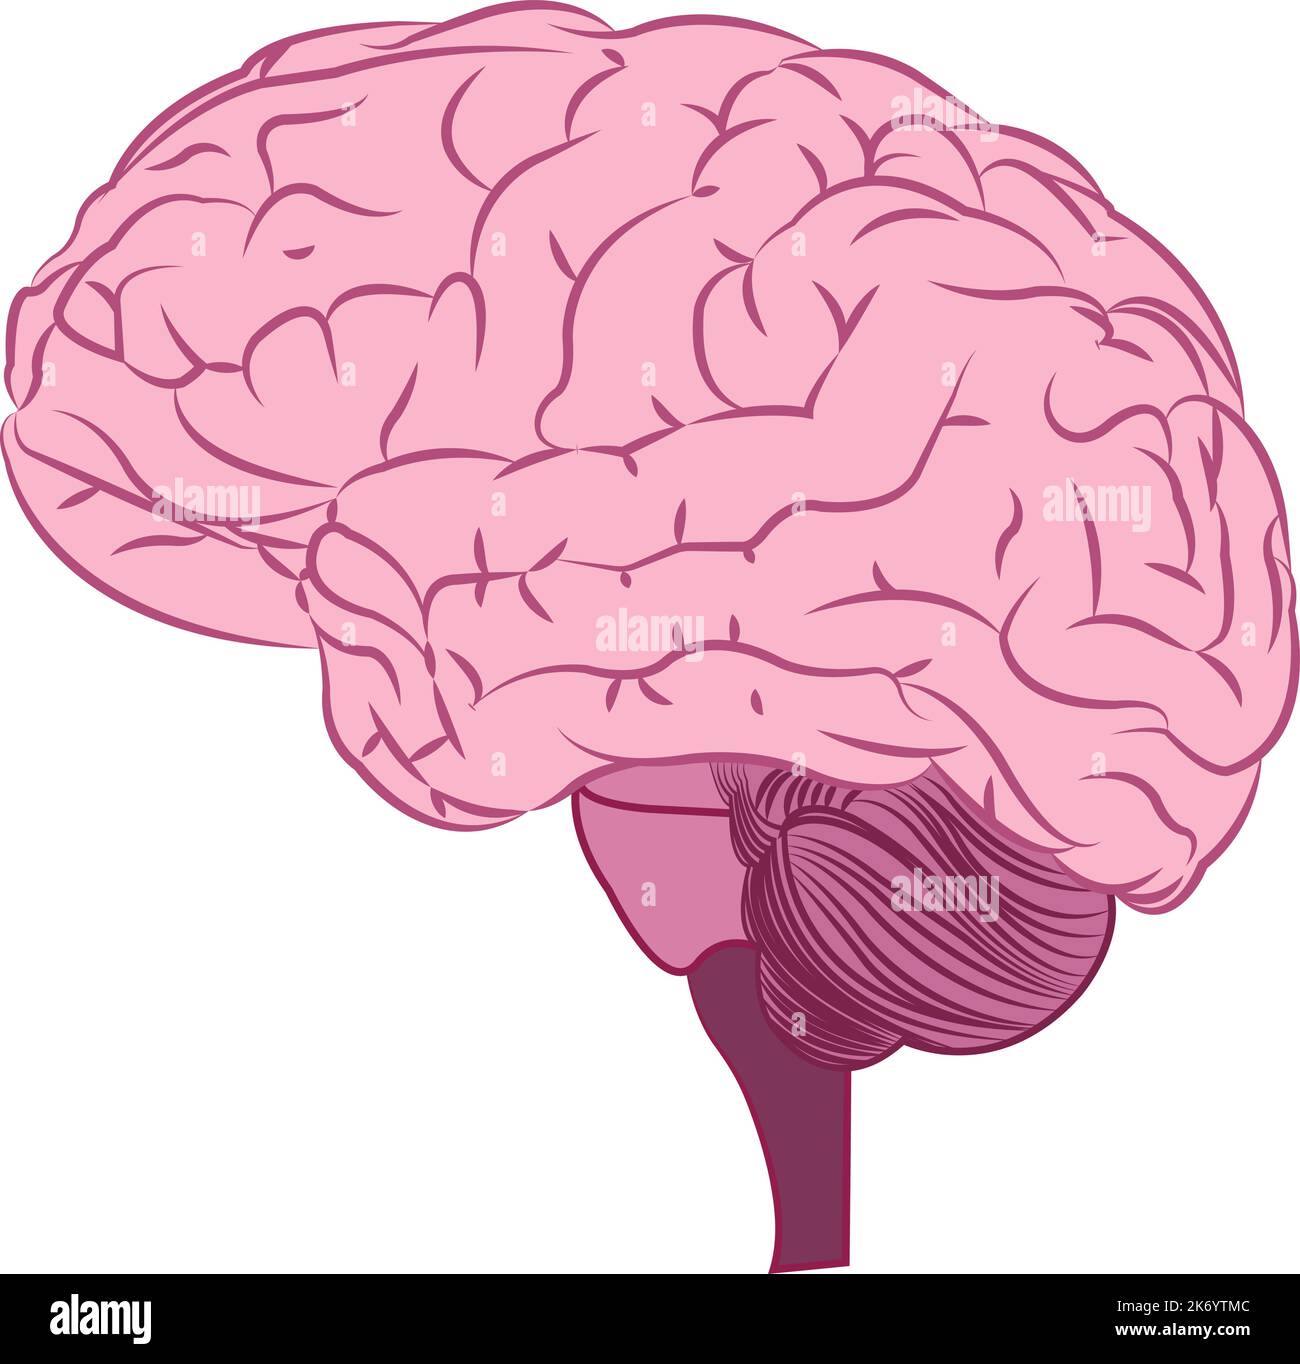 vettore cerebrale umano Illustrazione Vettoriale